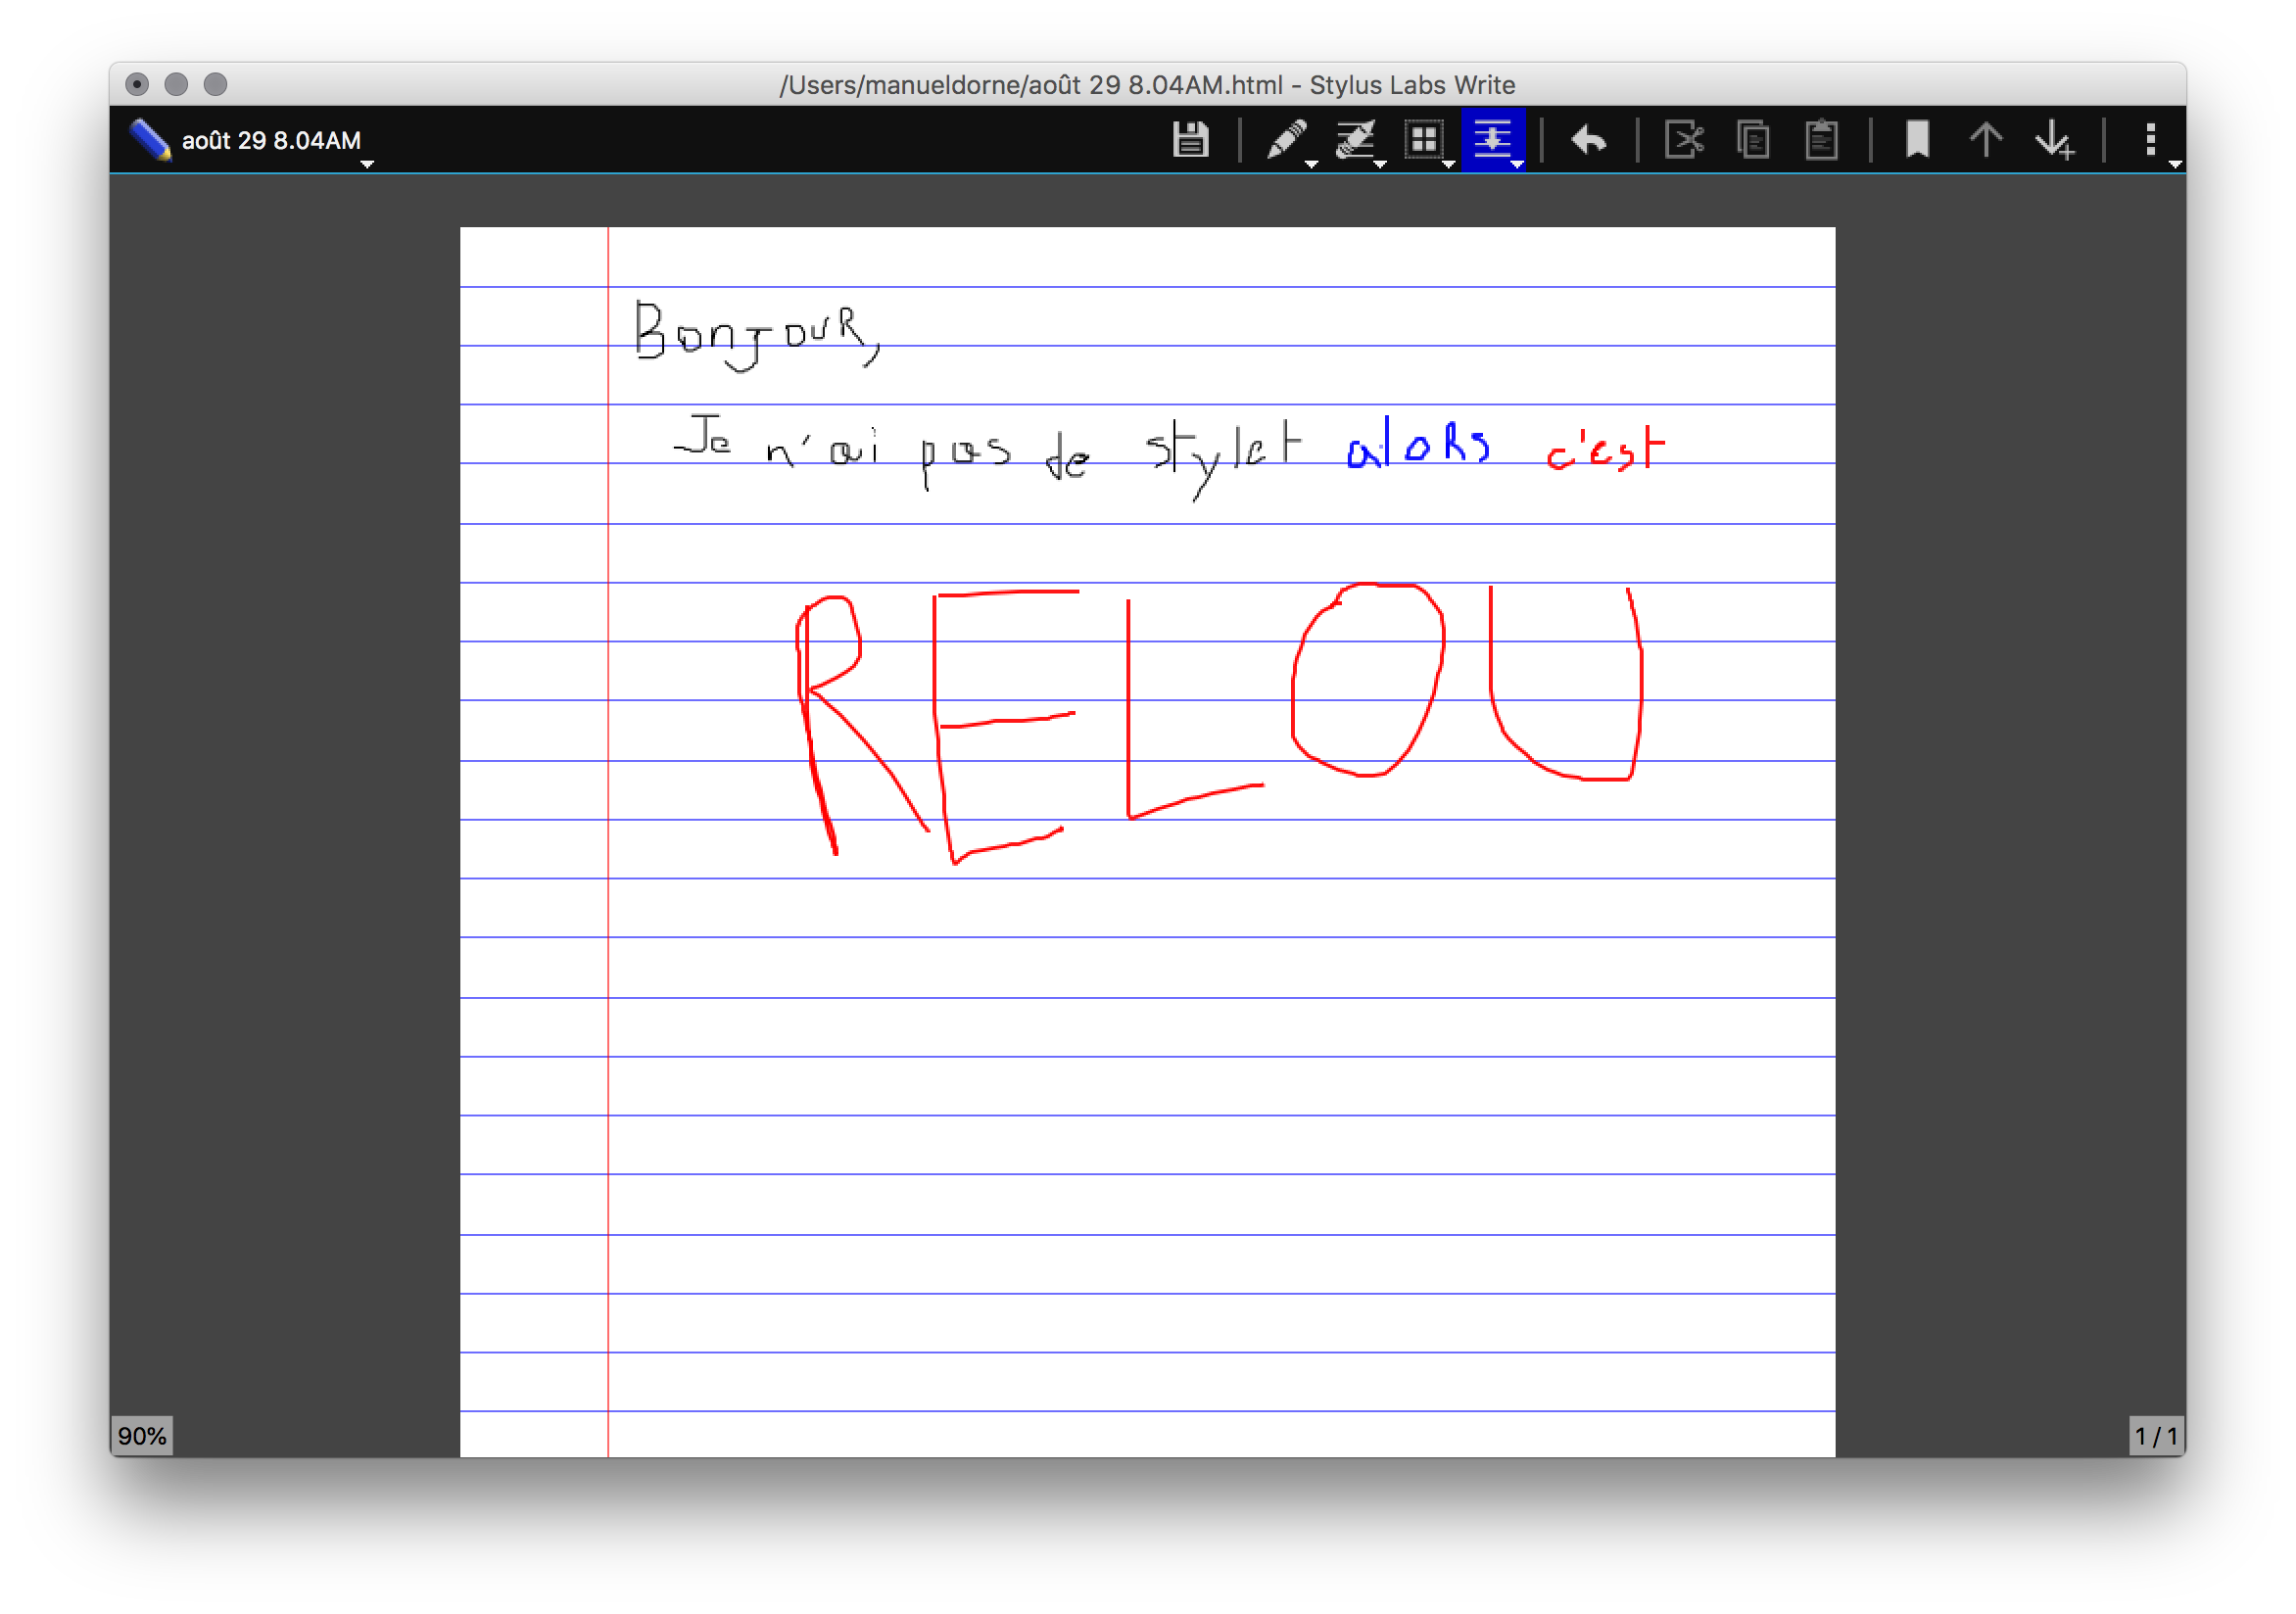 Capture d'écran de l'interface utilisateur de Write, montrant la fonction d'écriture manuscrite